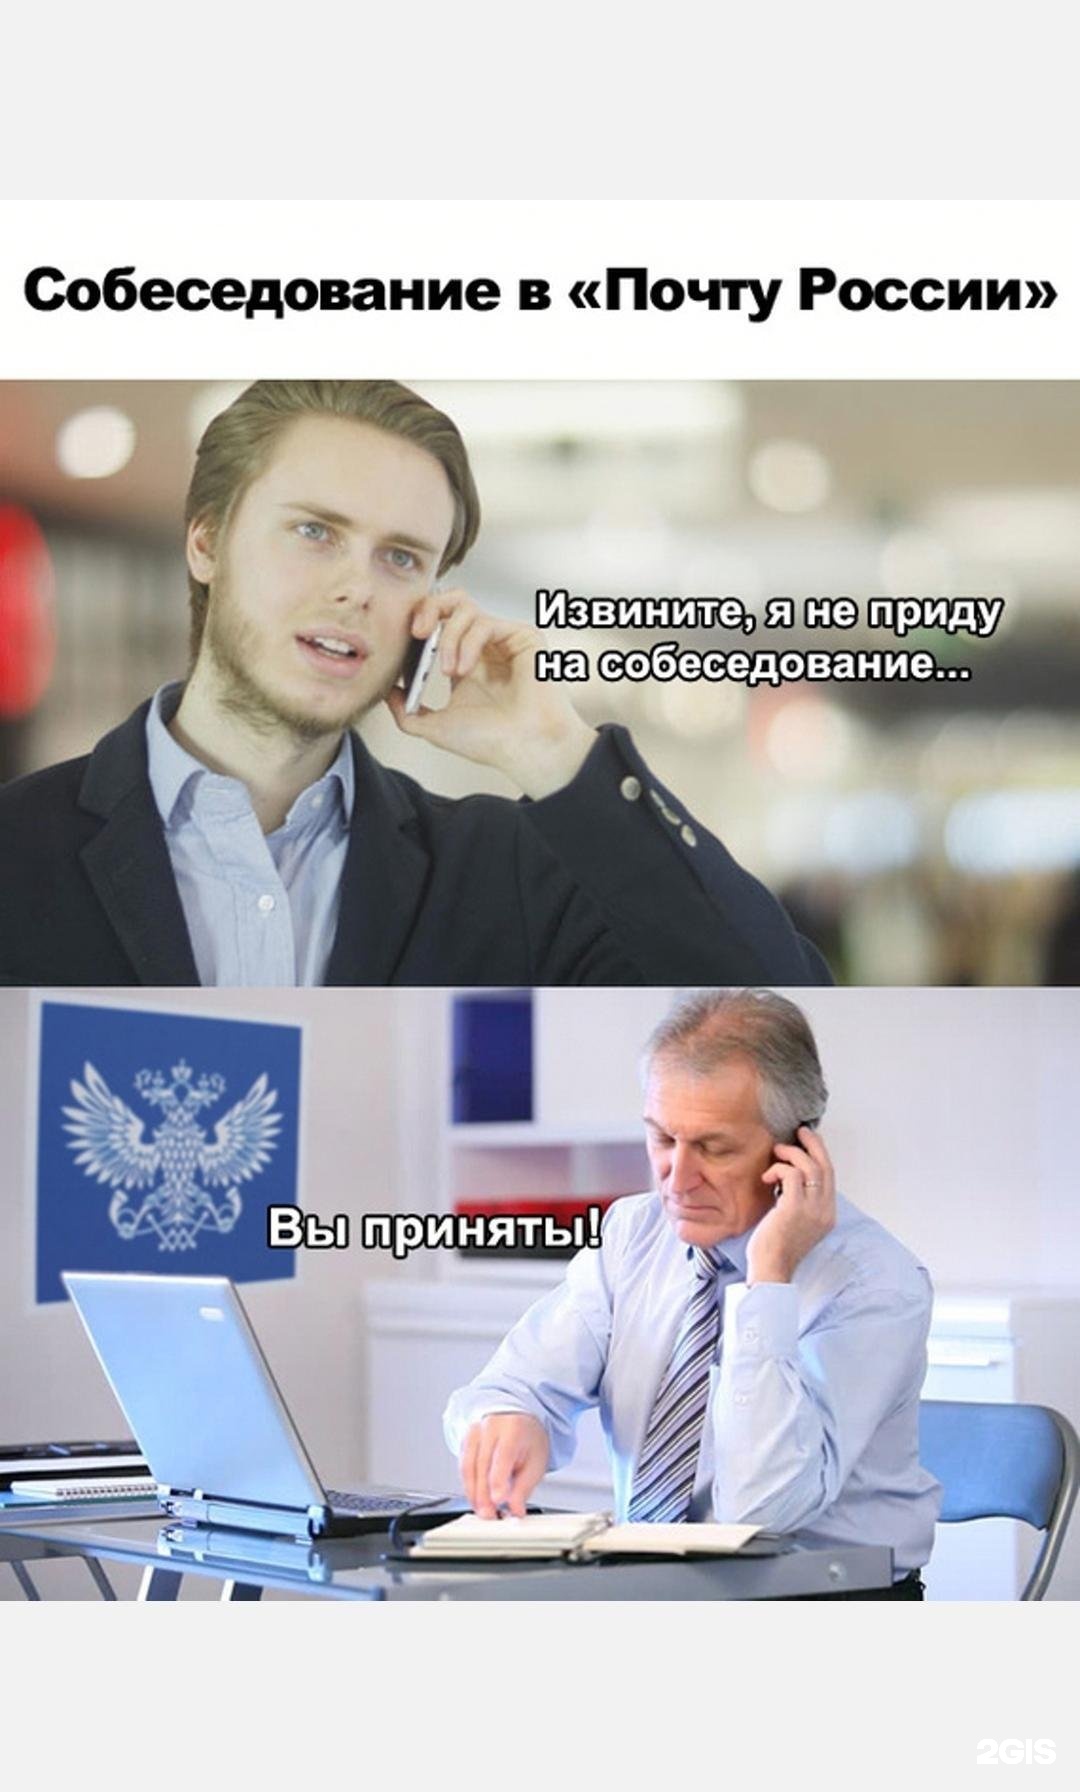 Почта России мемы